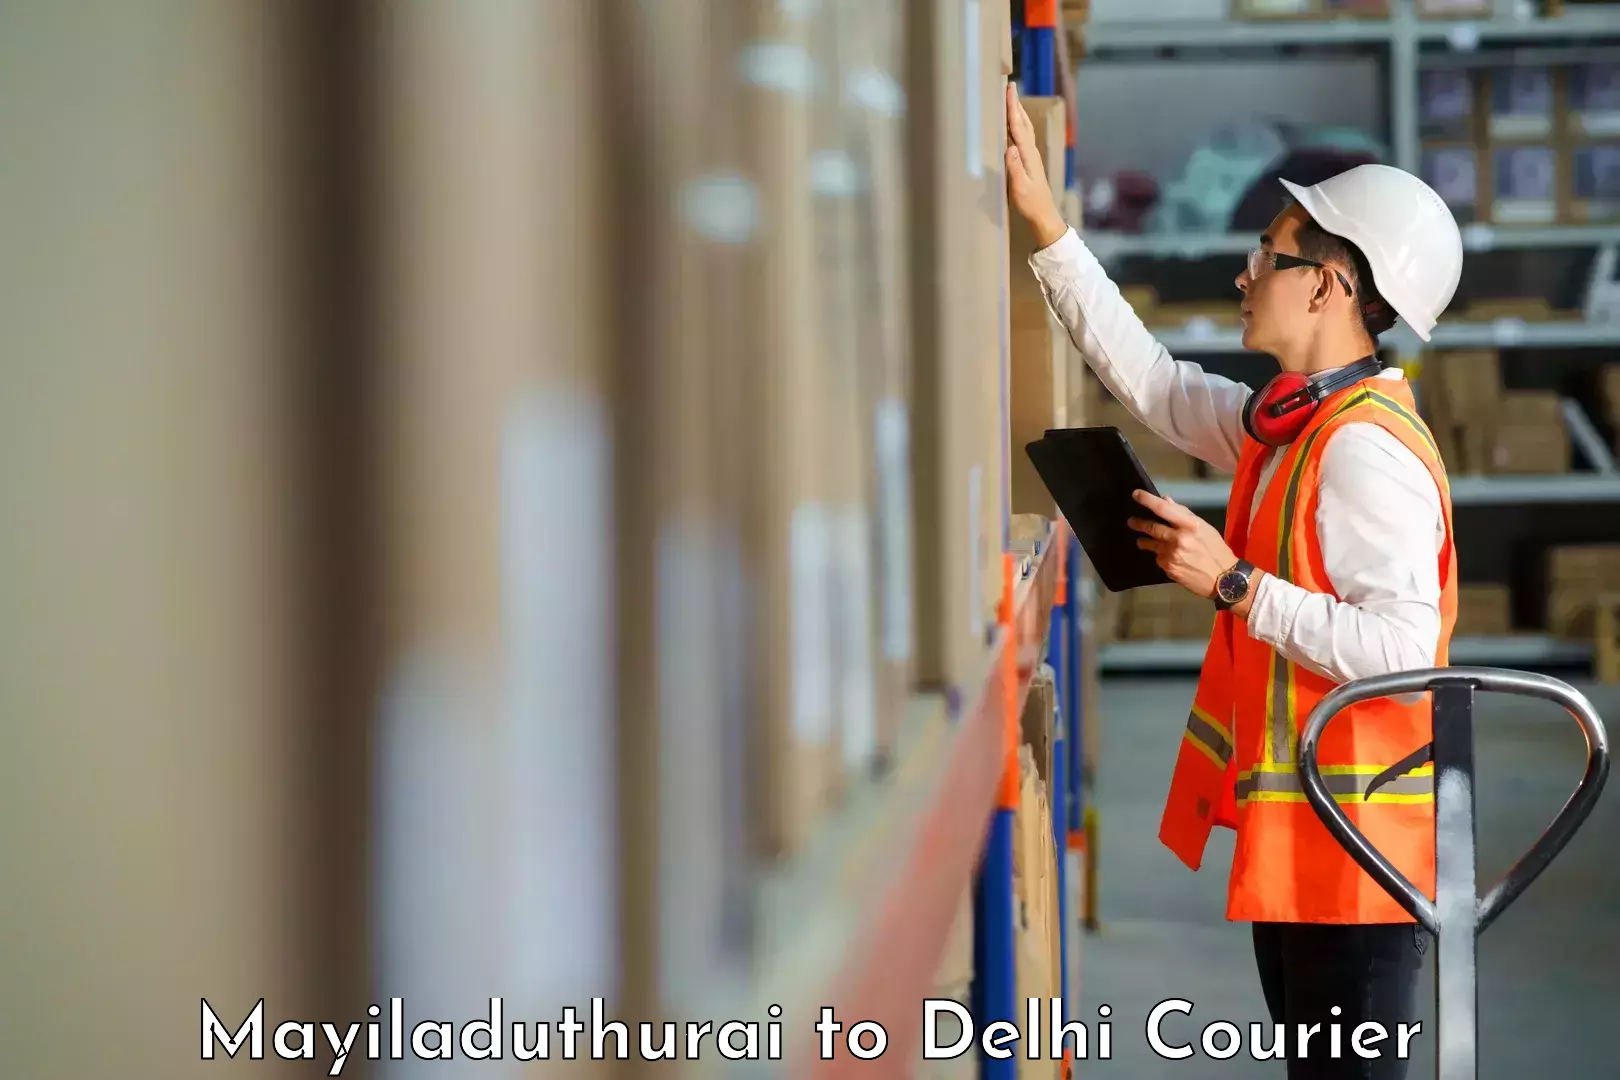 High-capacity parcel service Mayiladuthurai to Jamia Millia Islamia New Delhi